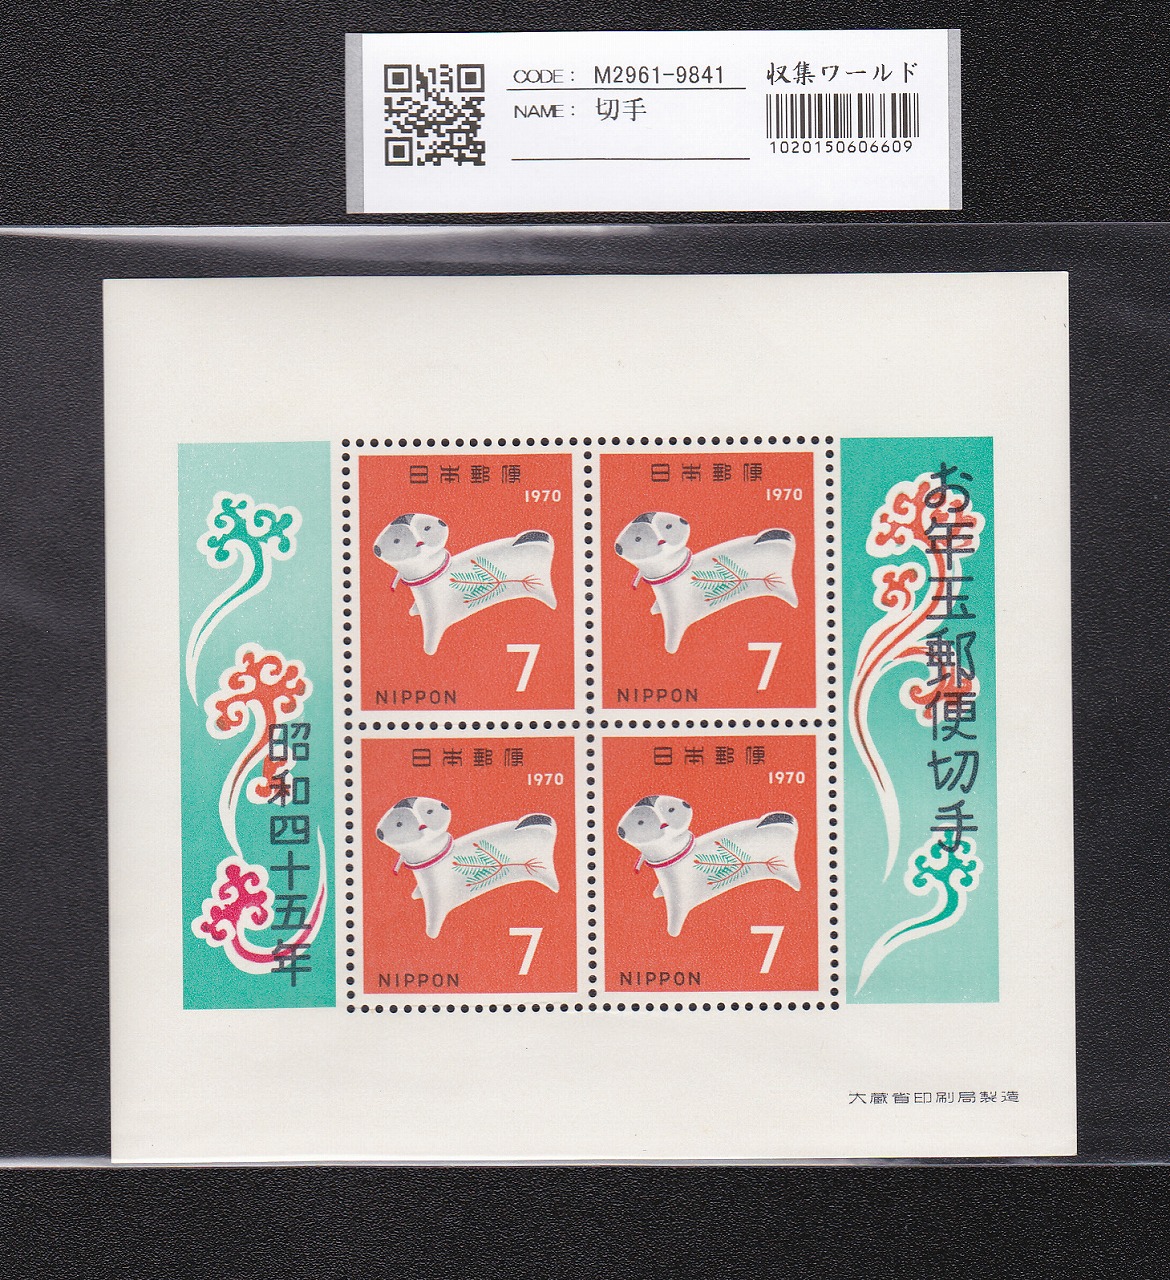 お年玉 郵便切手 いぬ年 昭和45年(1970)発行 7円×4枚小型シート 未使用